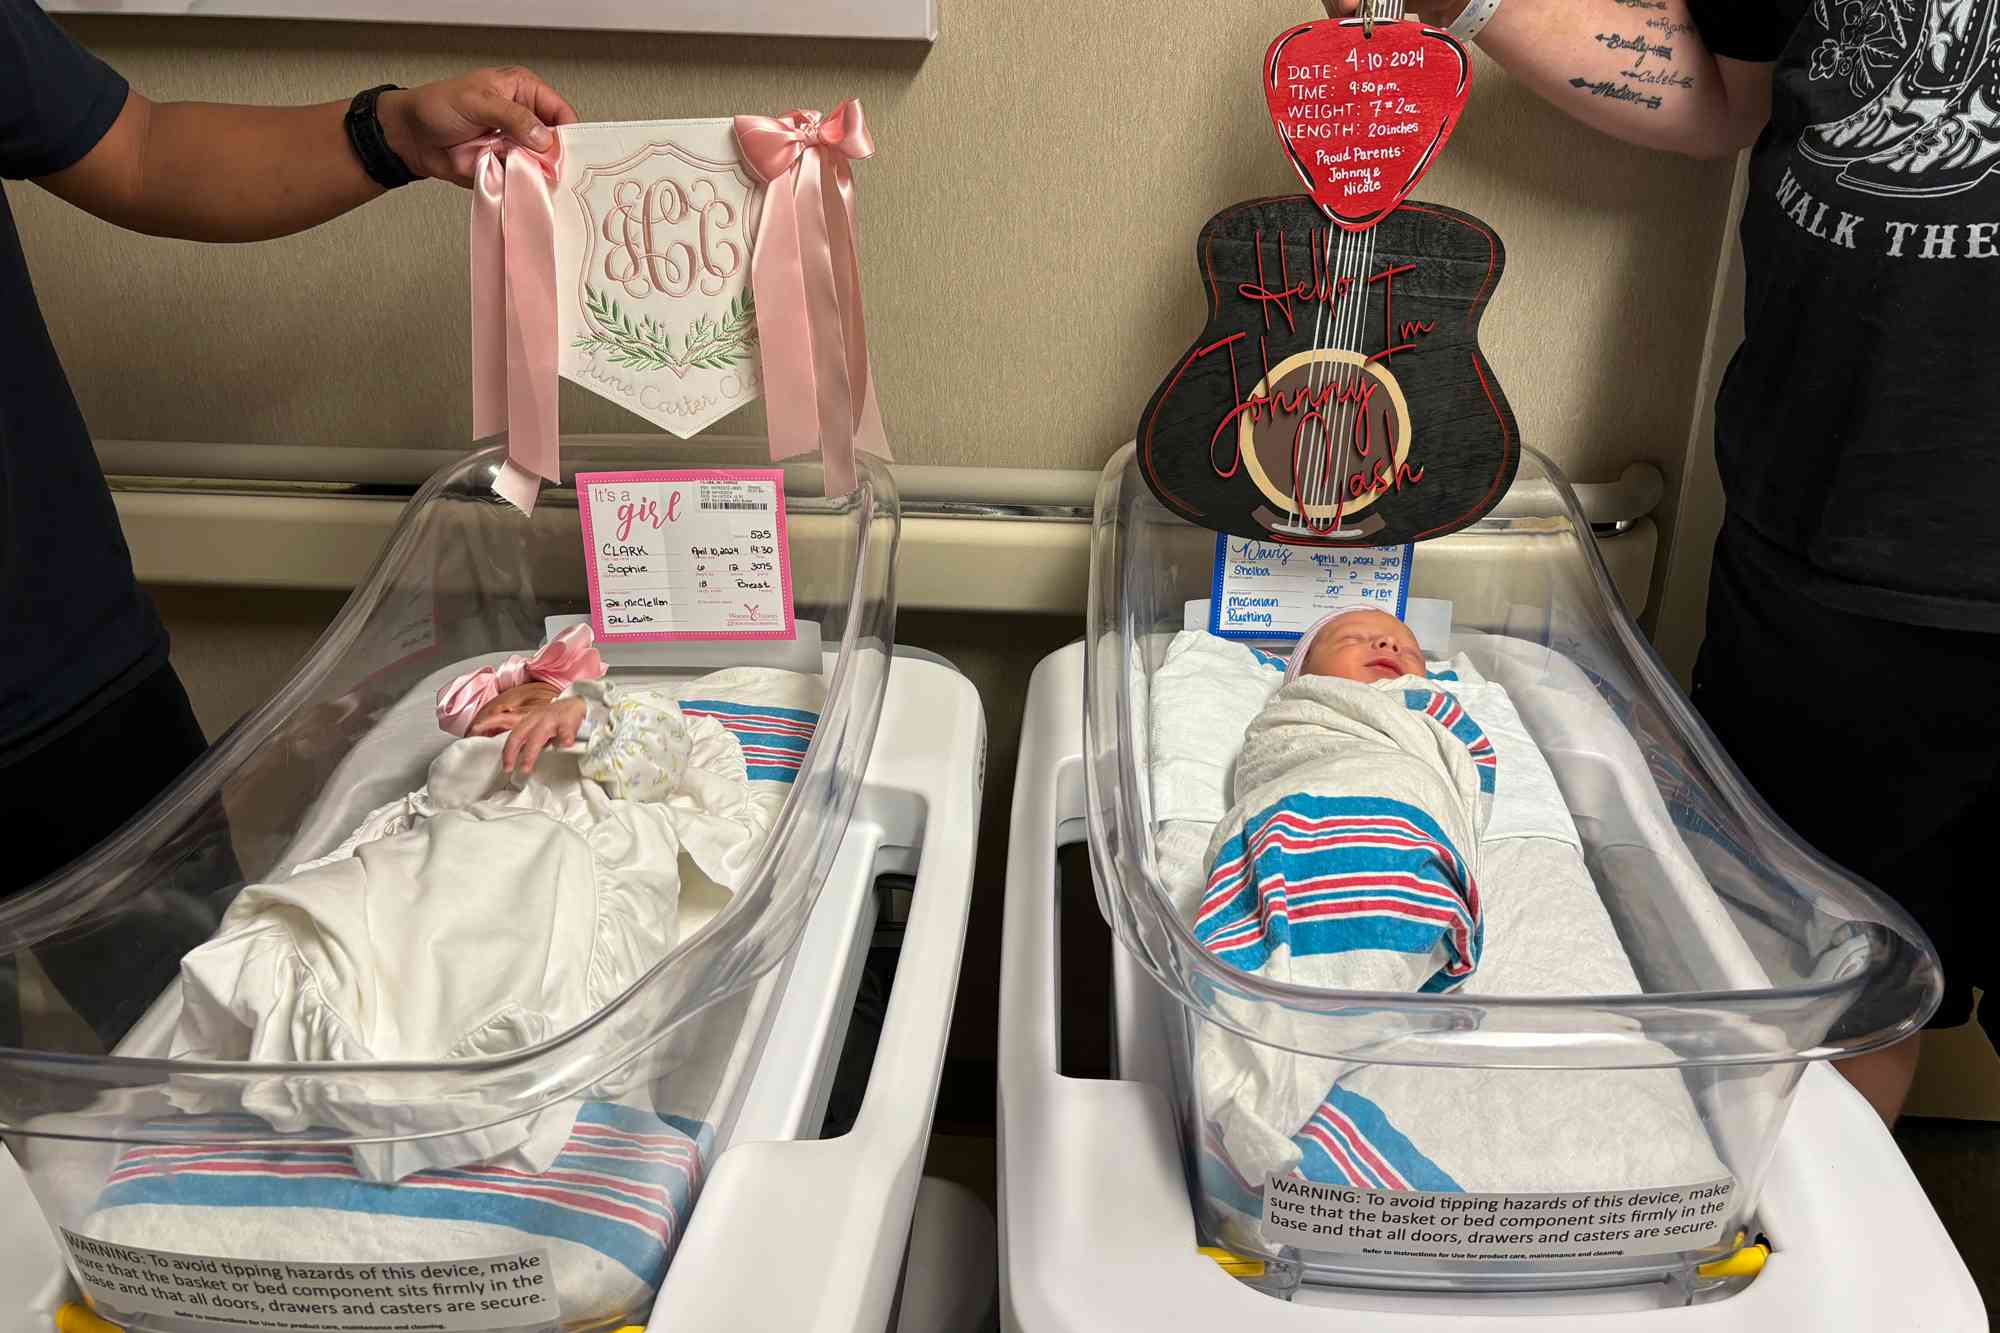 Moms Welcome Babies Named Johnny Cash and June Carter at Same Alabama Hospital on Same Day